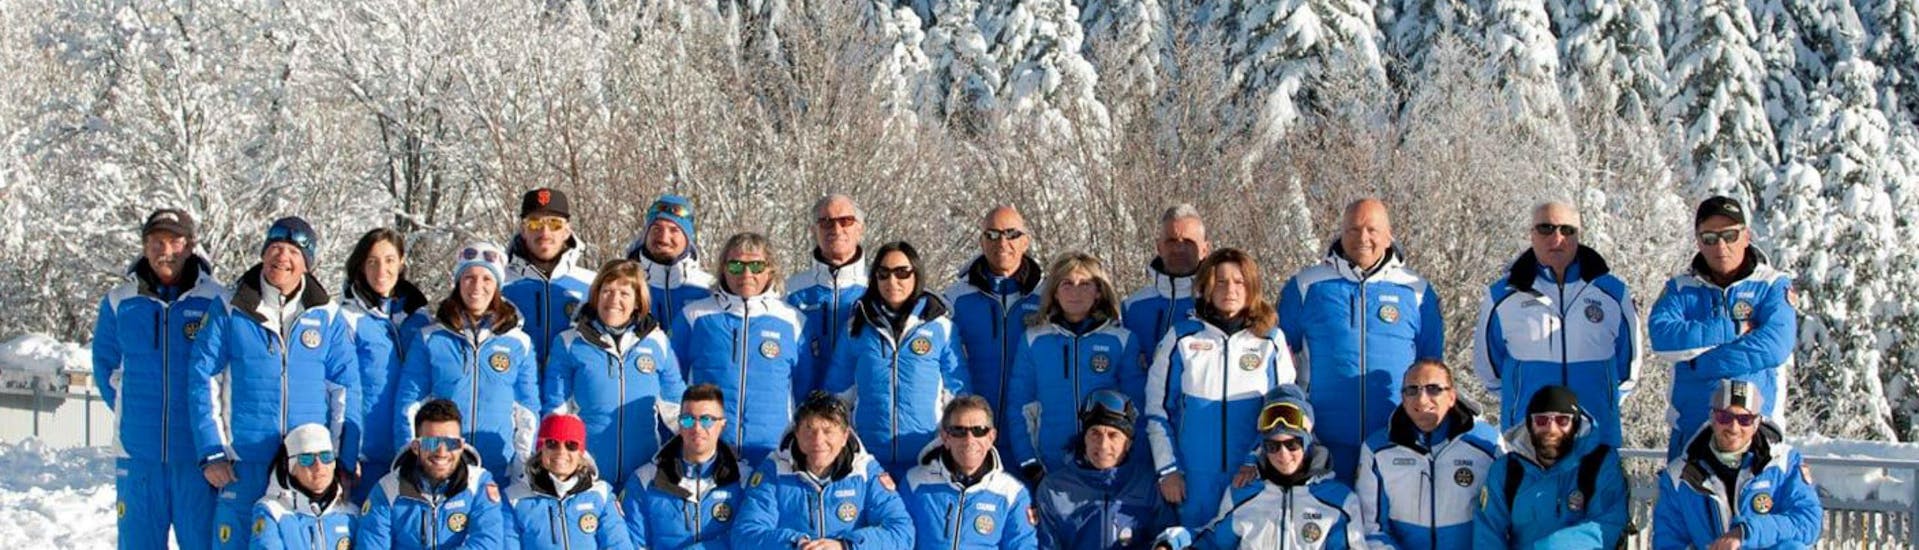 Dei maestri di sci della scuola Scuola di Sci Abetone sono pronti a iniziare le lezioni di sci sulle piste del comprensorio sciistico di Abetone.